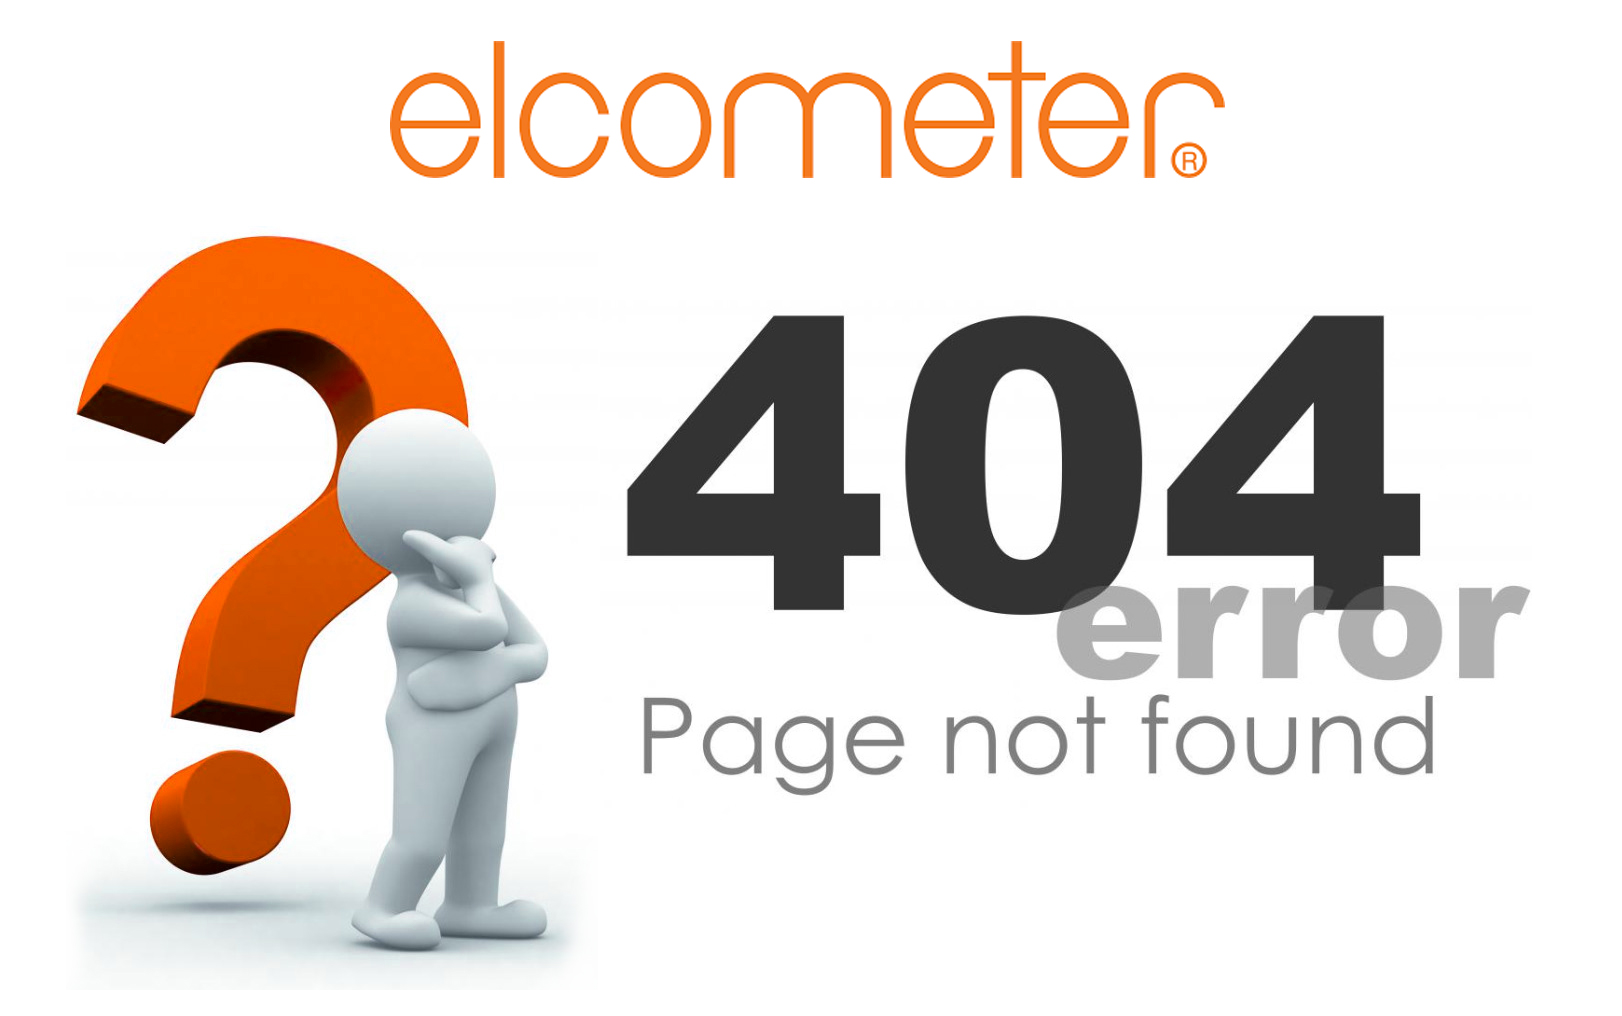 404-error-page-not-found